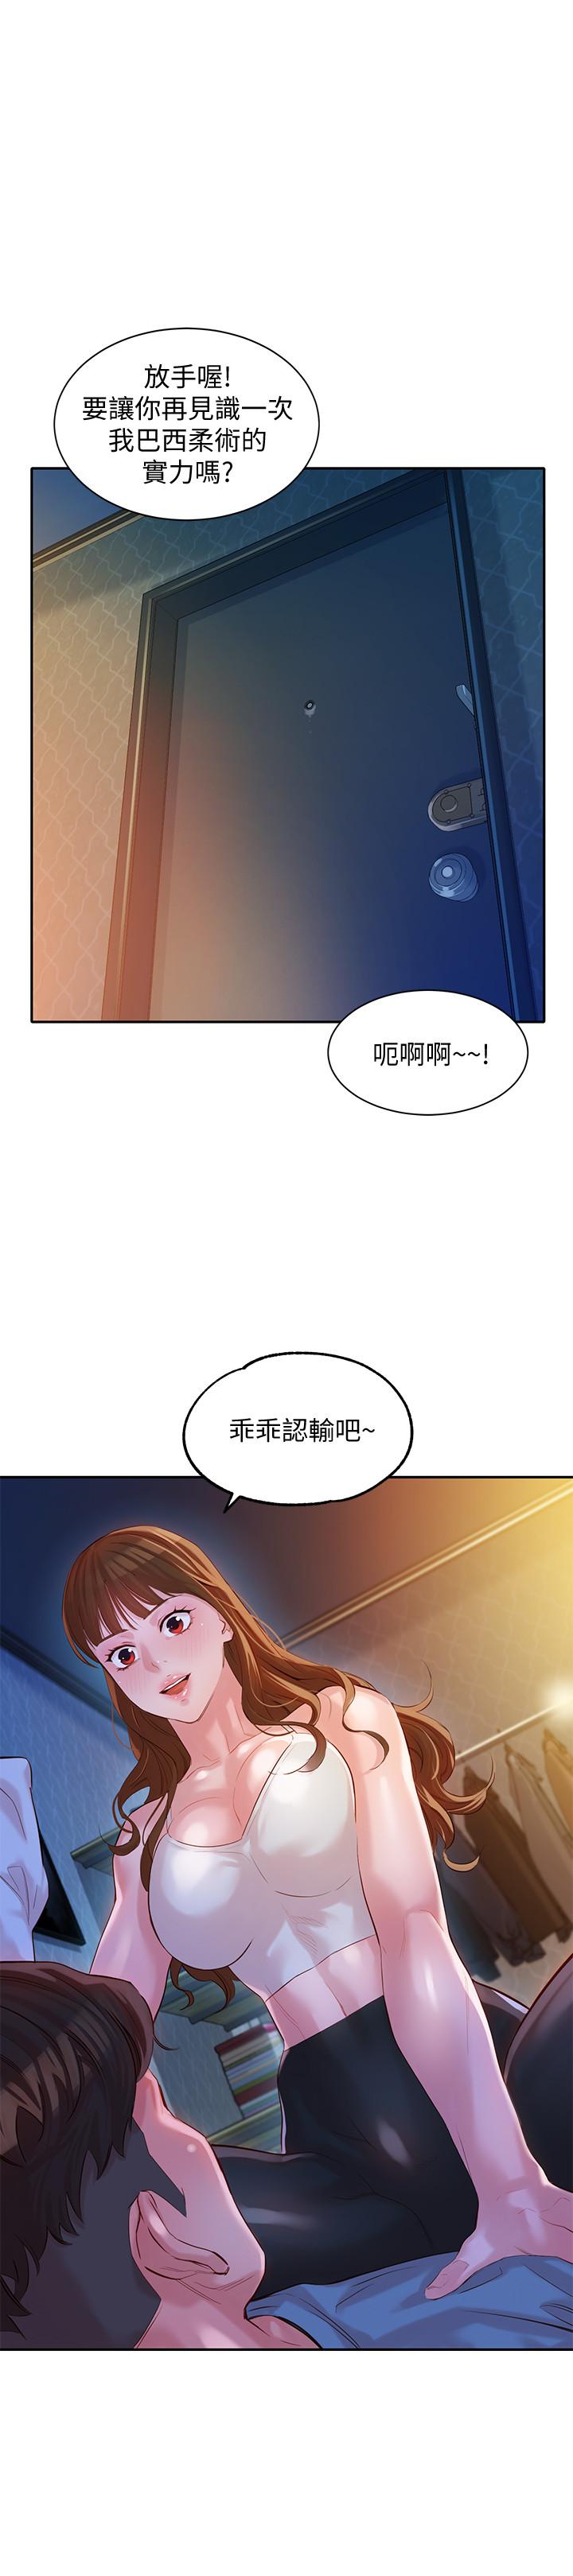 韩国污漫画 女神寫真 第14话-在两人之间流动的微妙情感 24